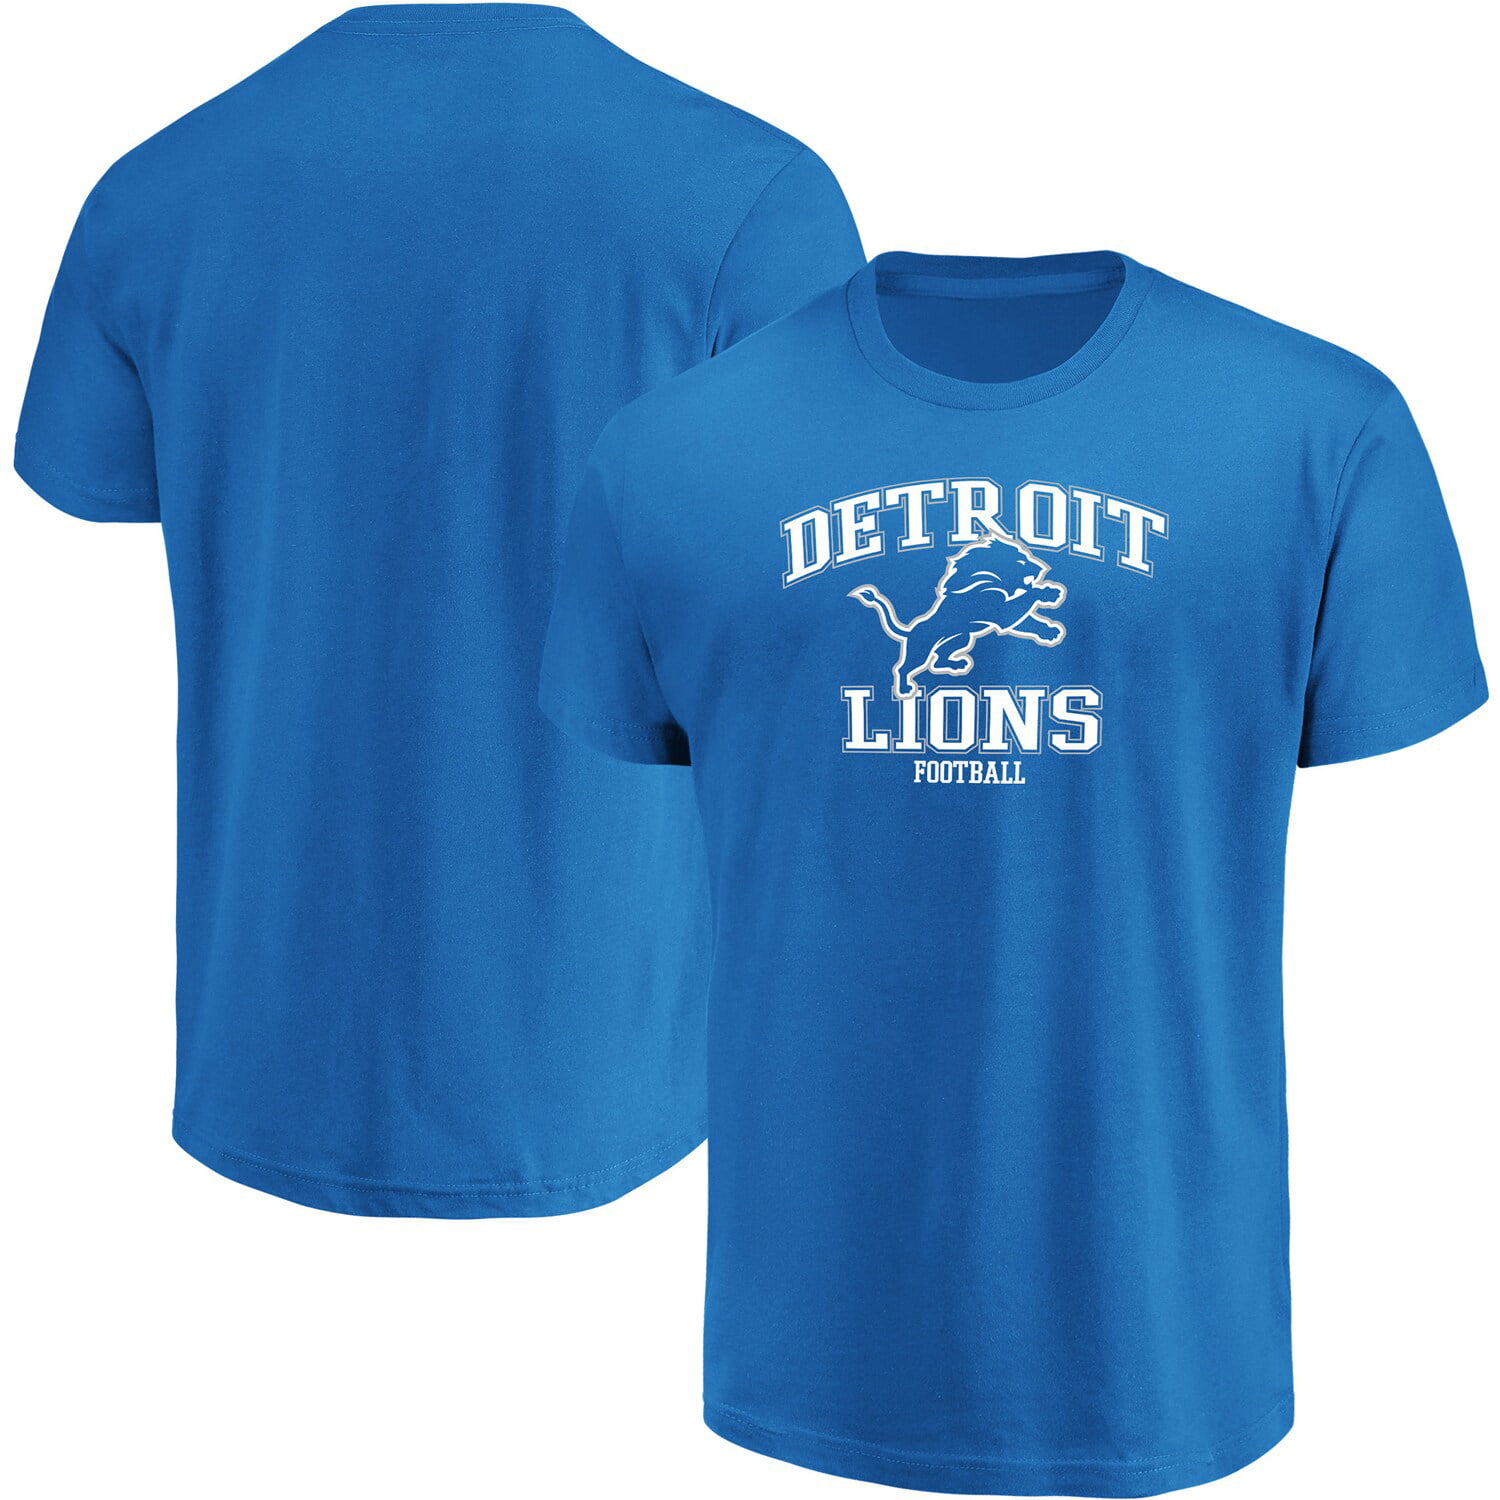 Detroit Lions Team Shop - Walmart.com